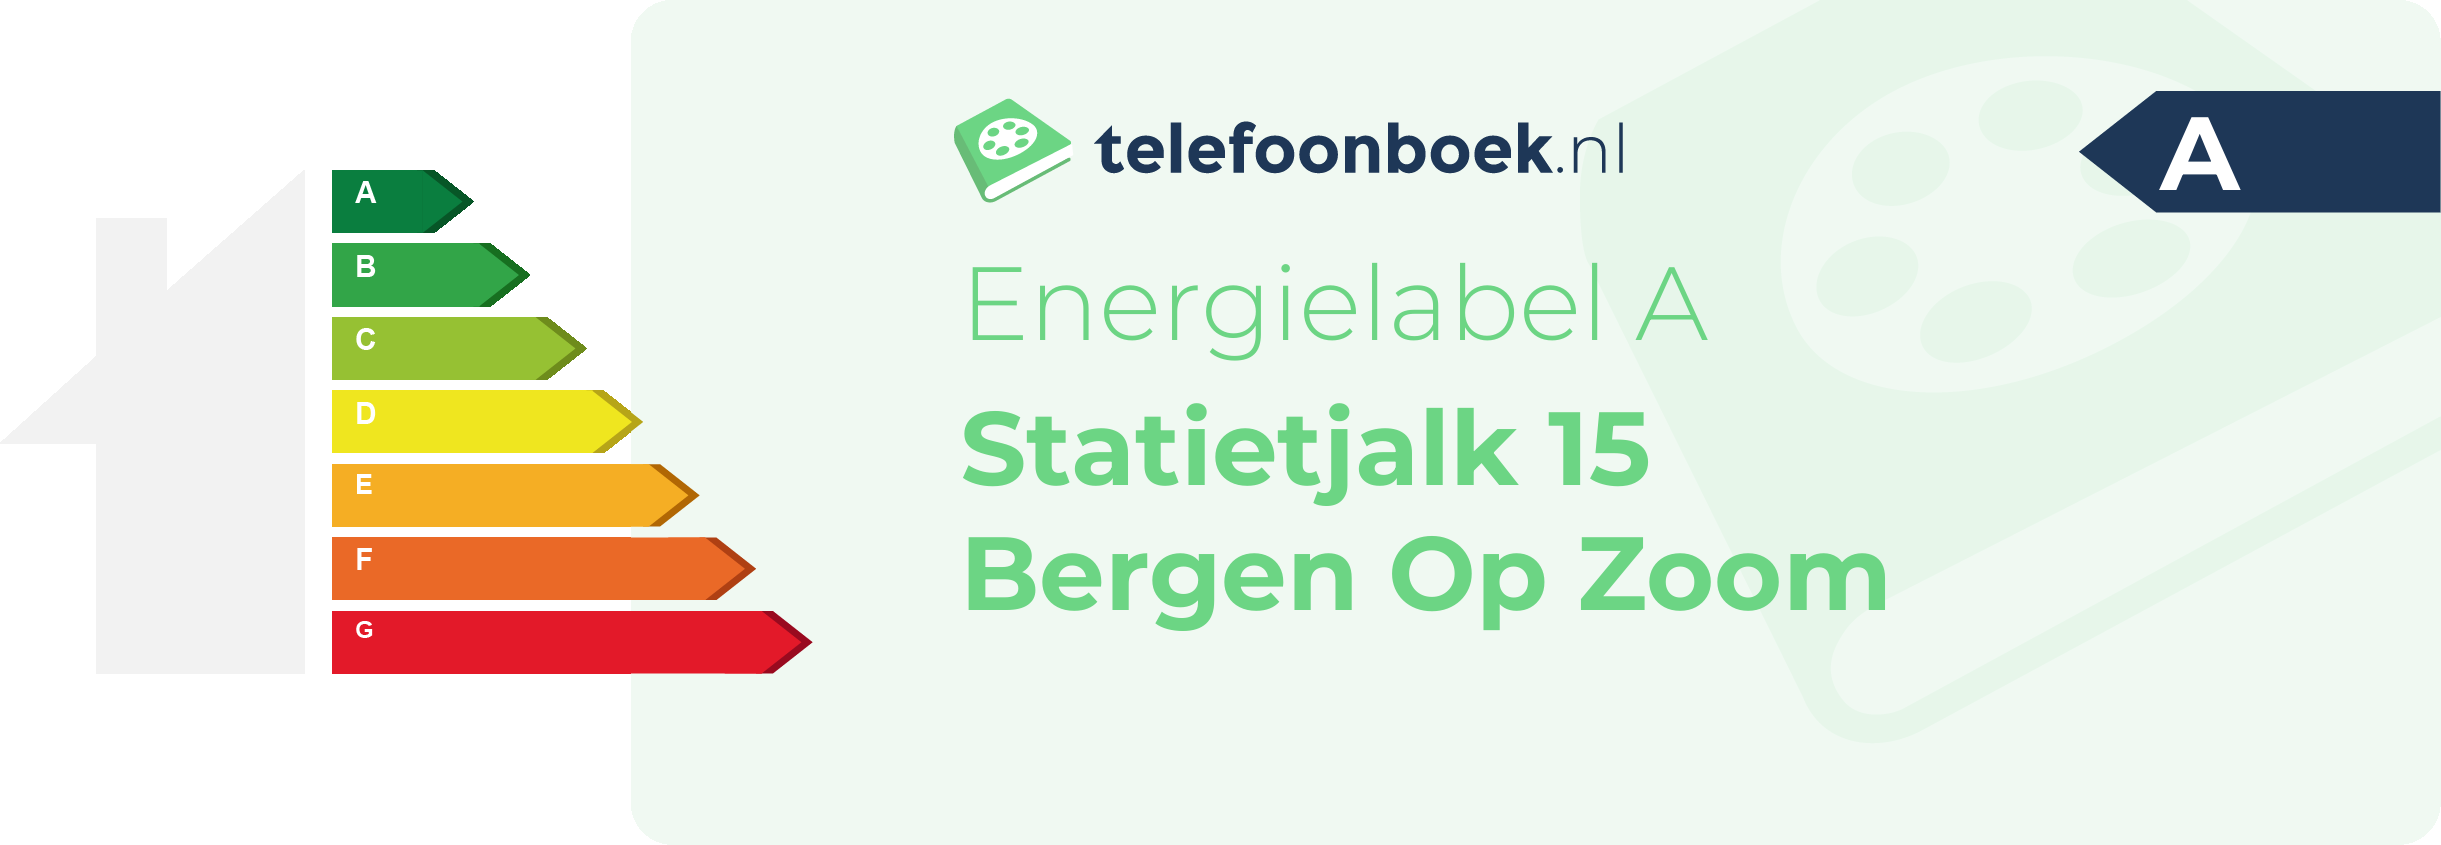 Energielabel Statietjalk 15 Bergen Op Zoom